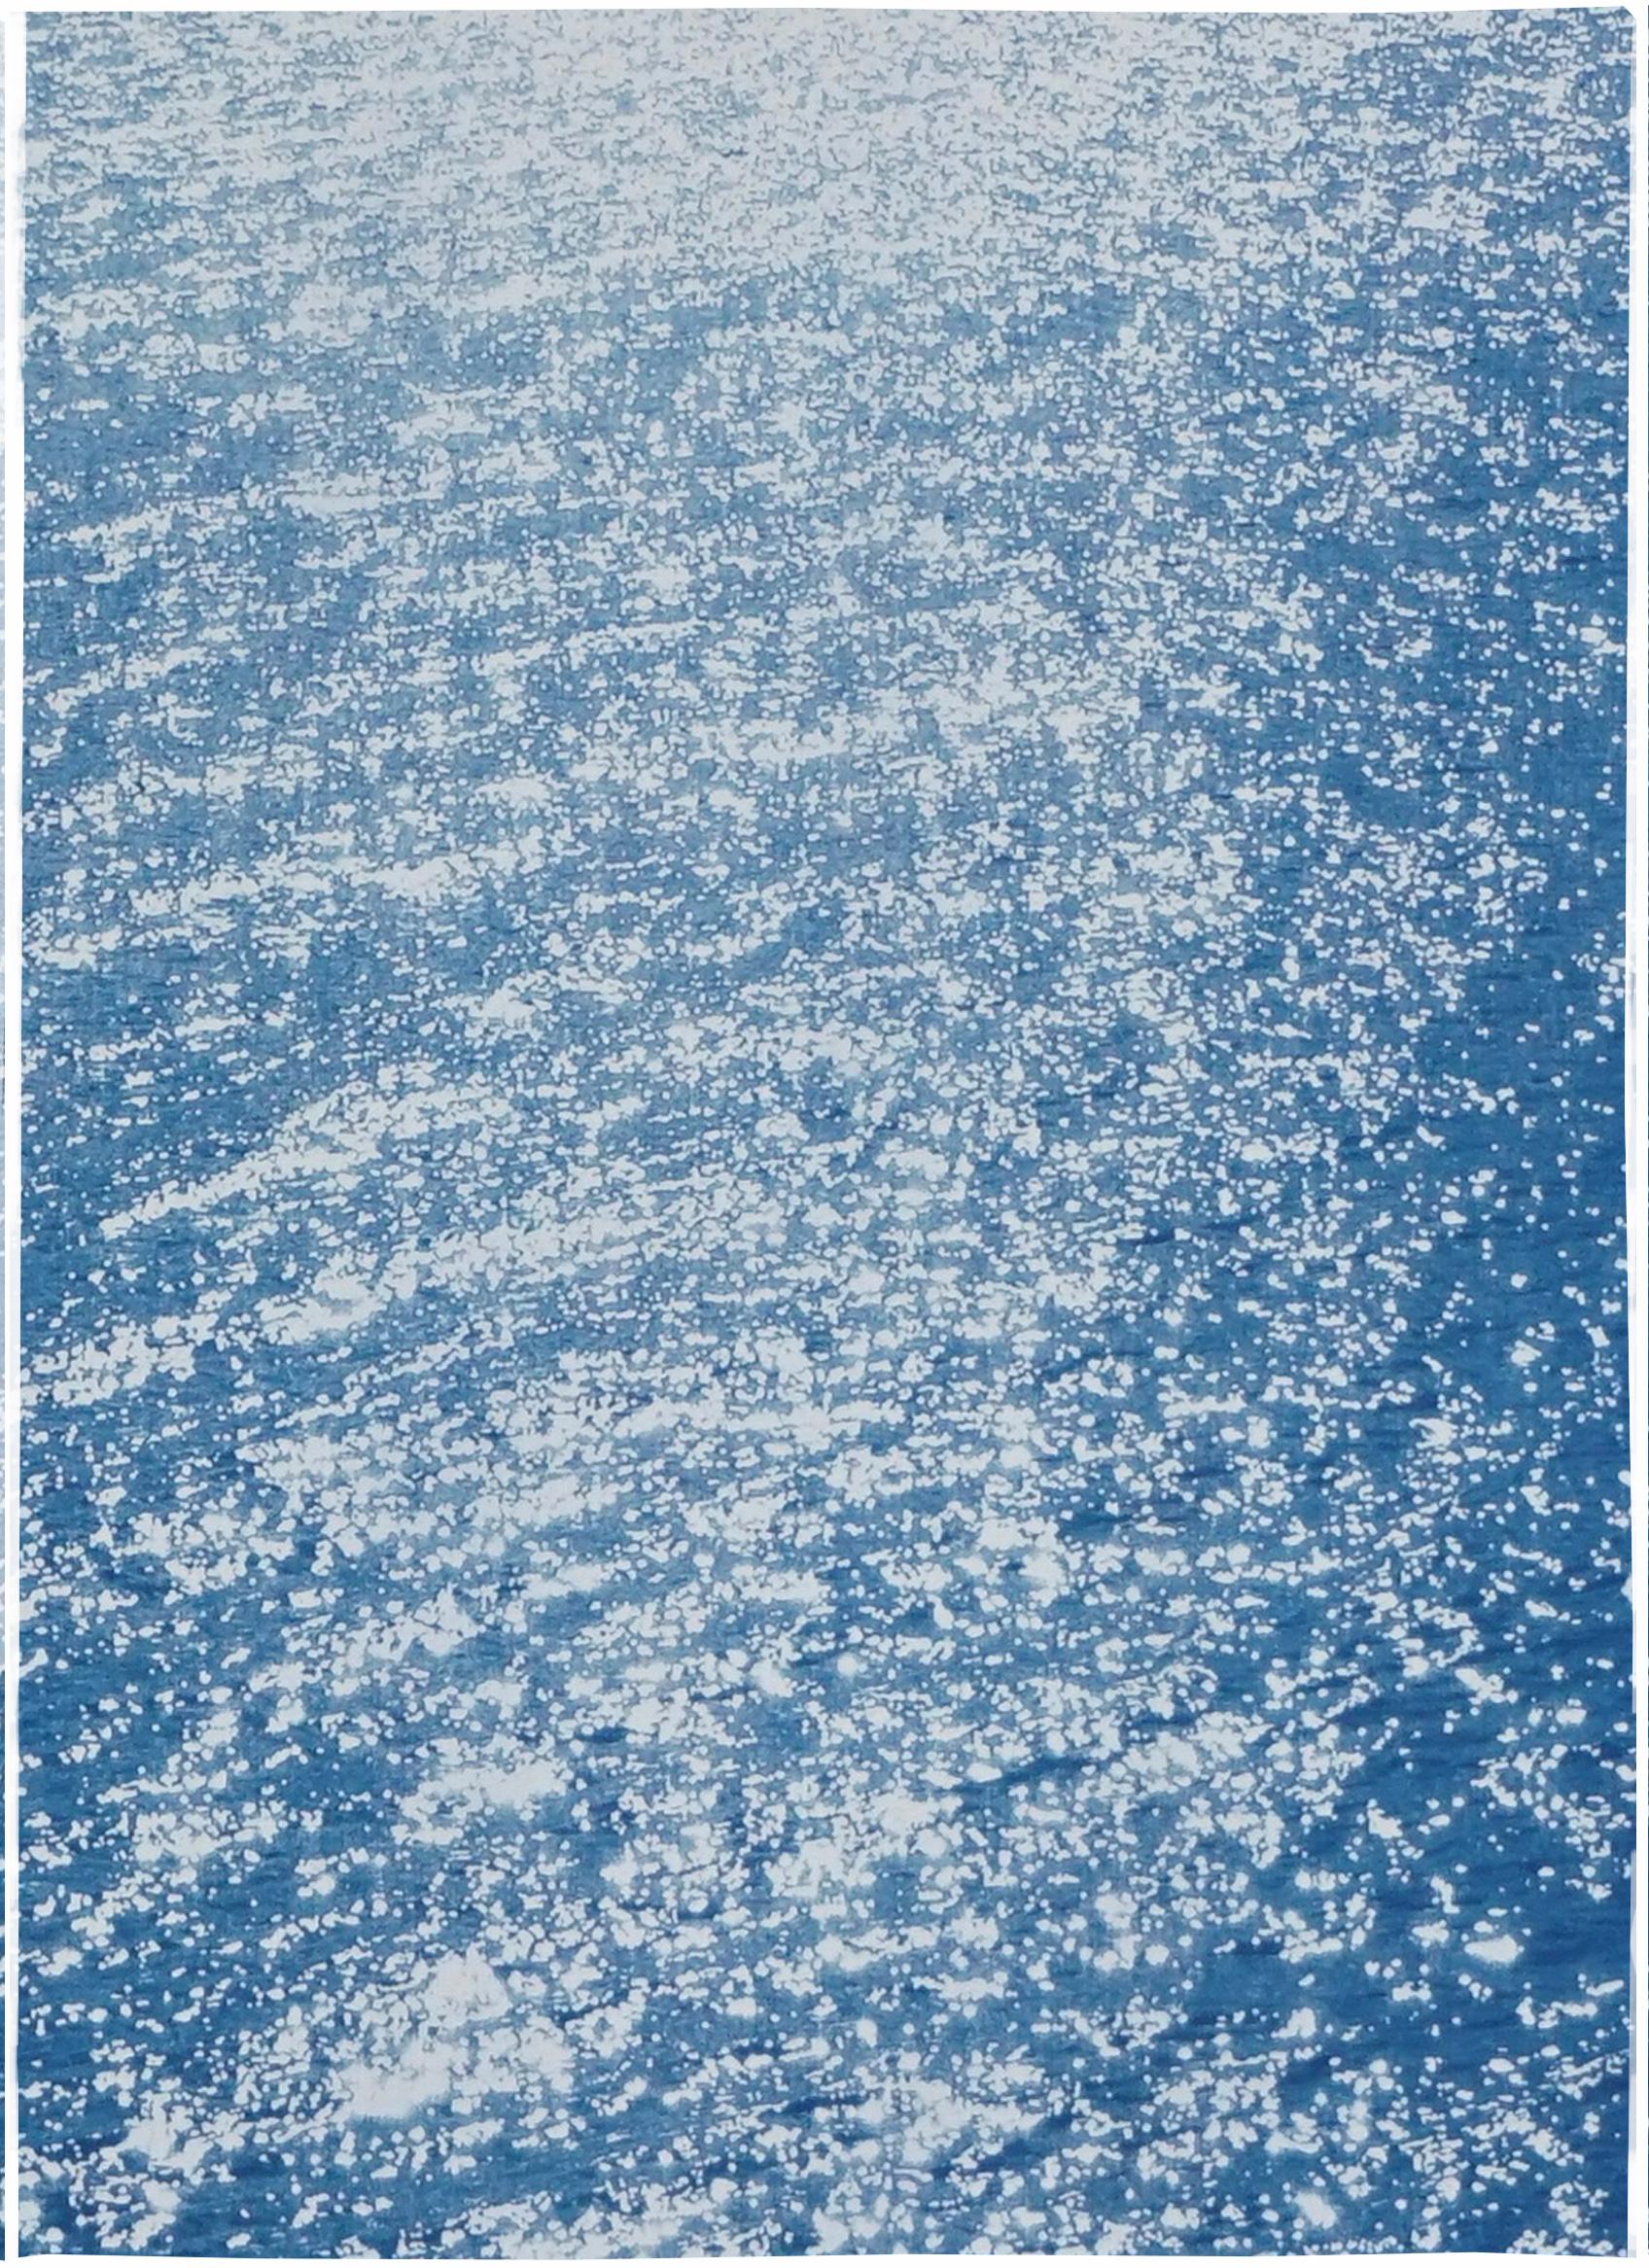 Amalfi Coast Seascape , Nautical Triptych Cyanotype on Paper, Sunrise Bay, 2020 - Minimalist Photograph by Kind of Cyan